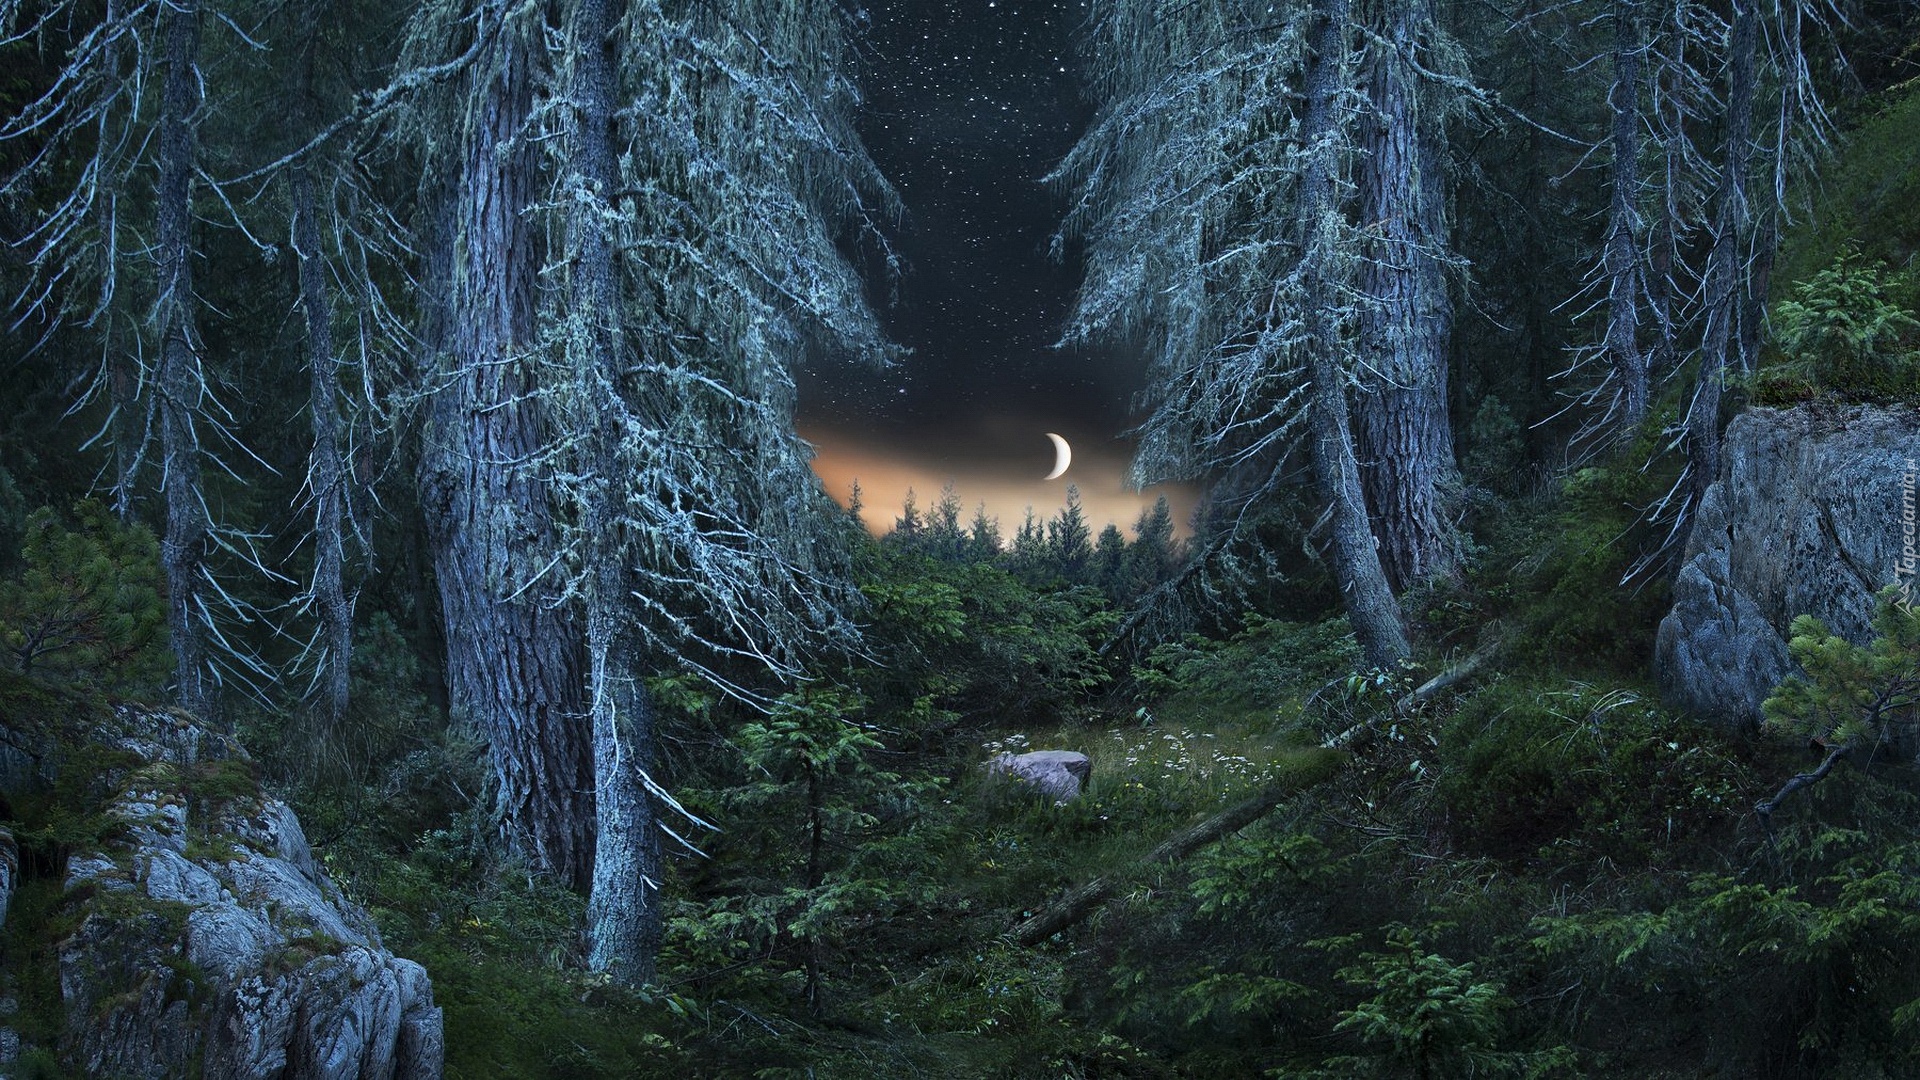 Las, Drzewa, Kamienie, Noc, Księżyc, Gwiazdy